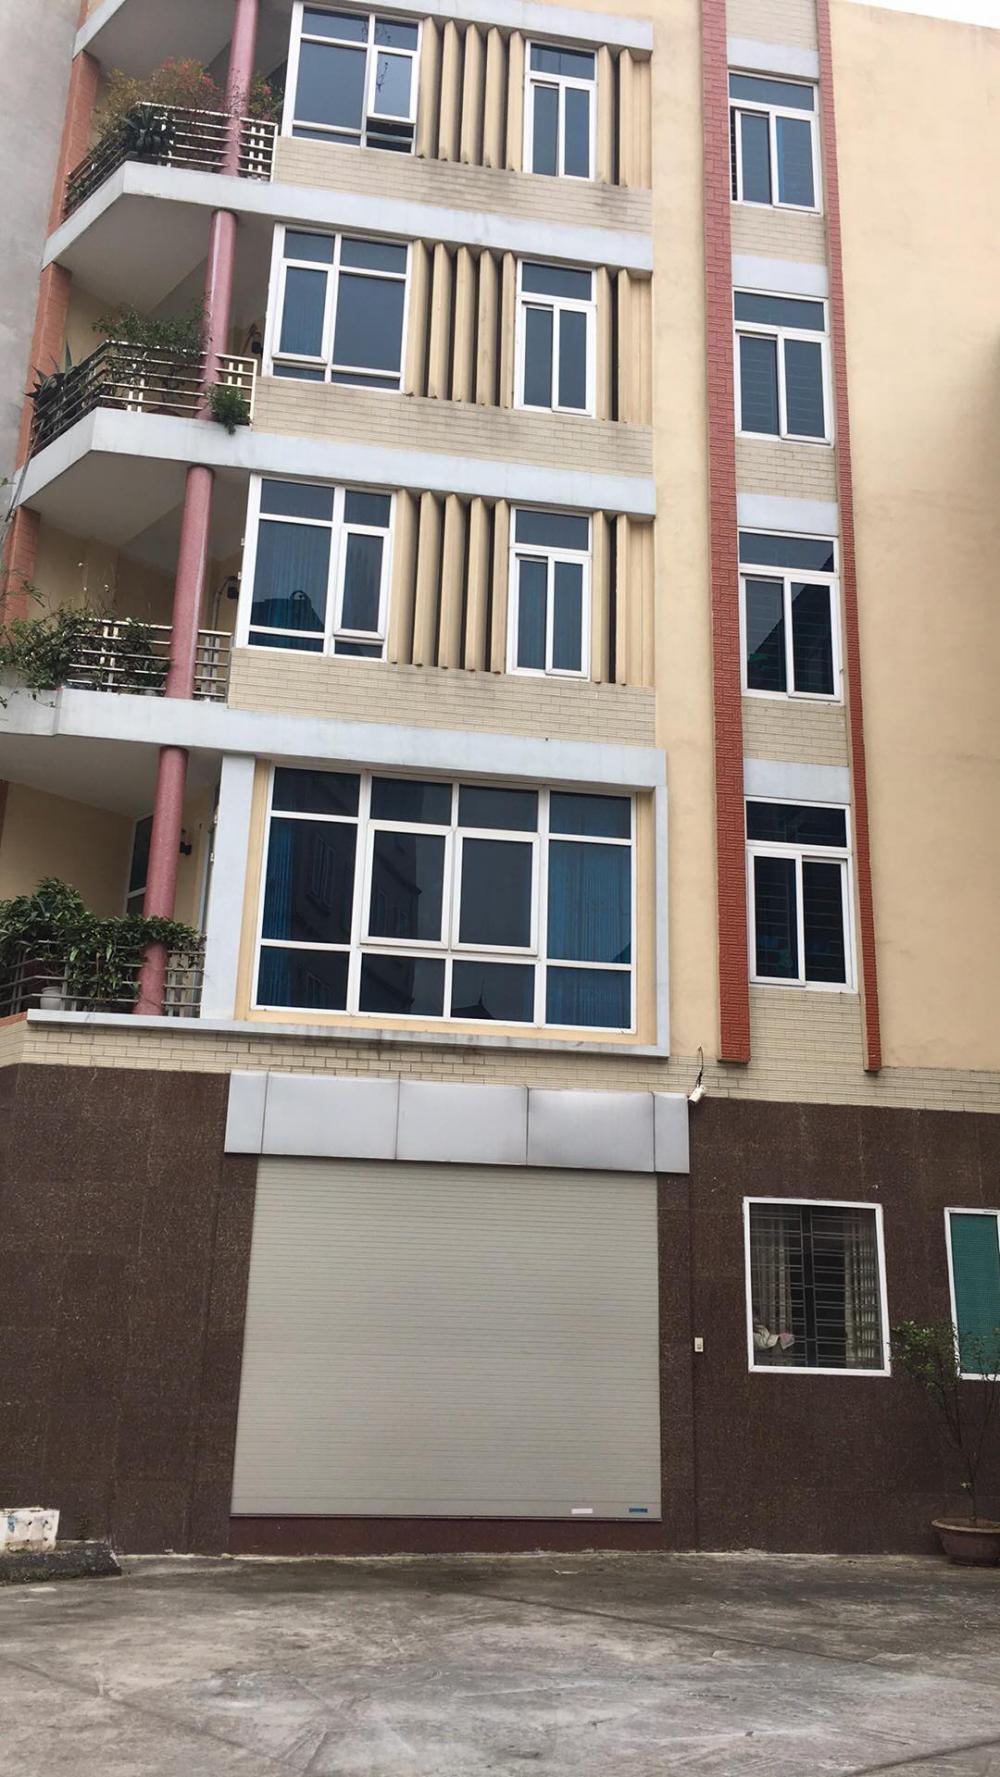 Bán gấp LK chung cư viện Bỏng, gần Phùng Hưng, 70m2, 4 tầng, trước nhà để chục cái ô tô, 5,8 tỷ 9856928